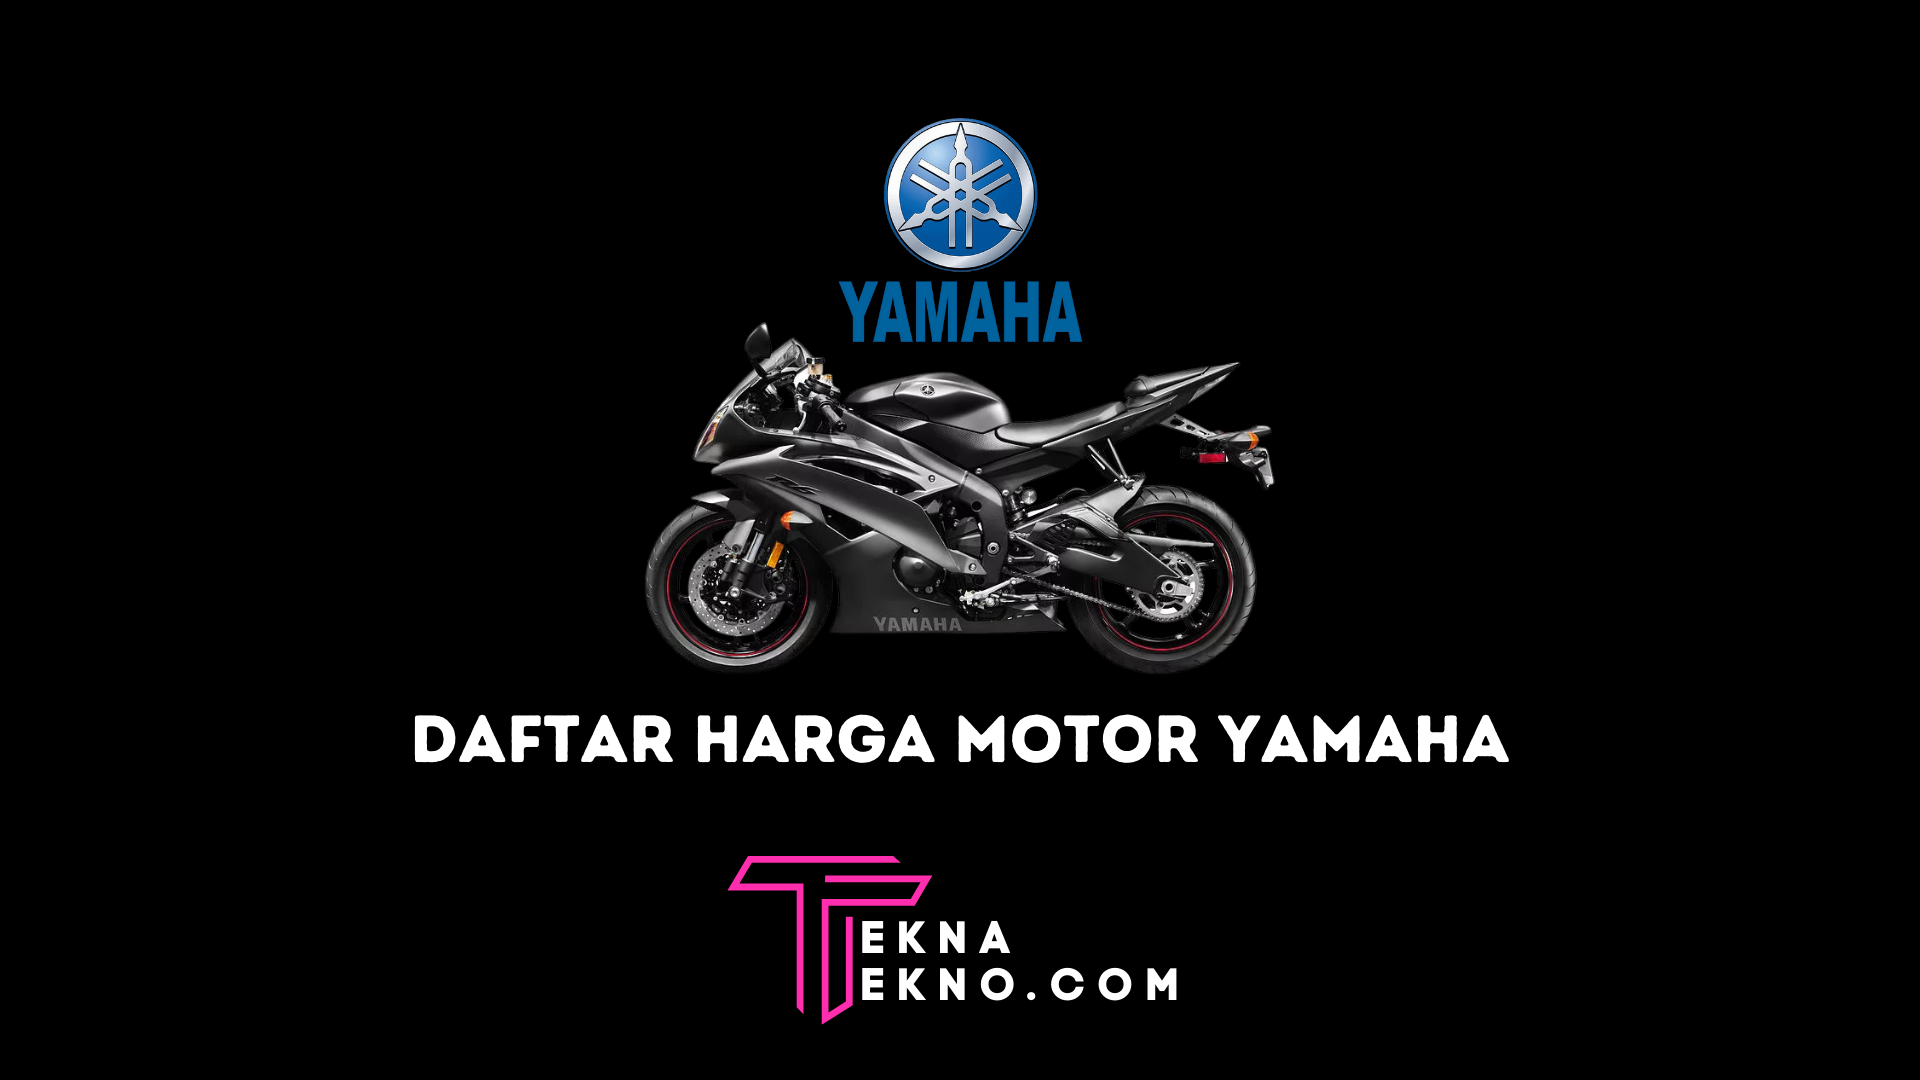 Daftar Harga Motor Yamaha Terbaru yang Rilis Tahun Ini